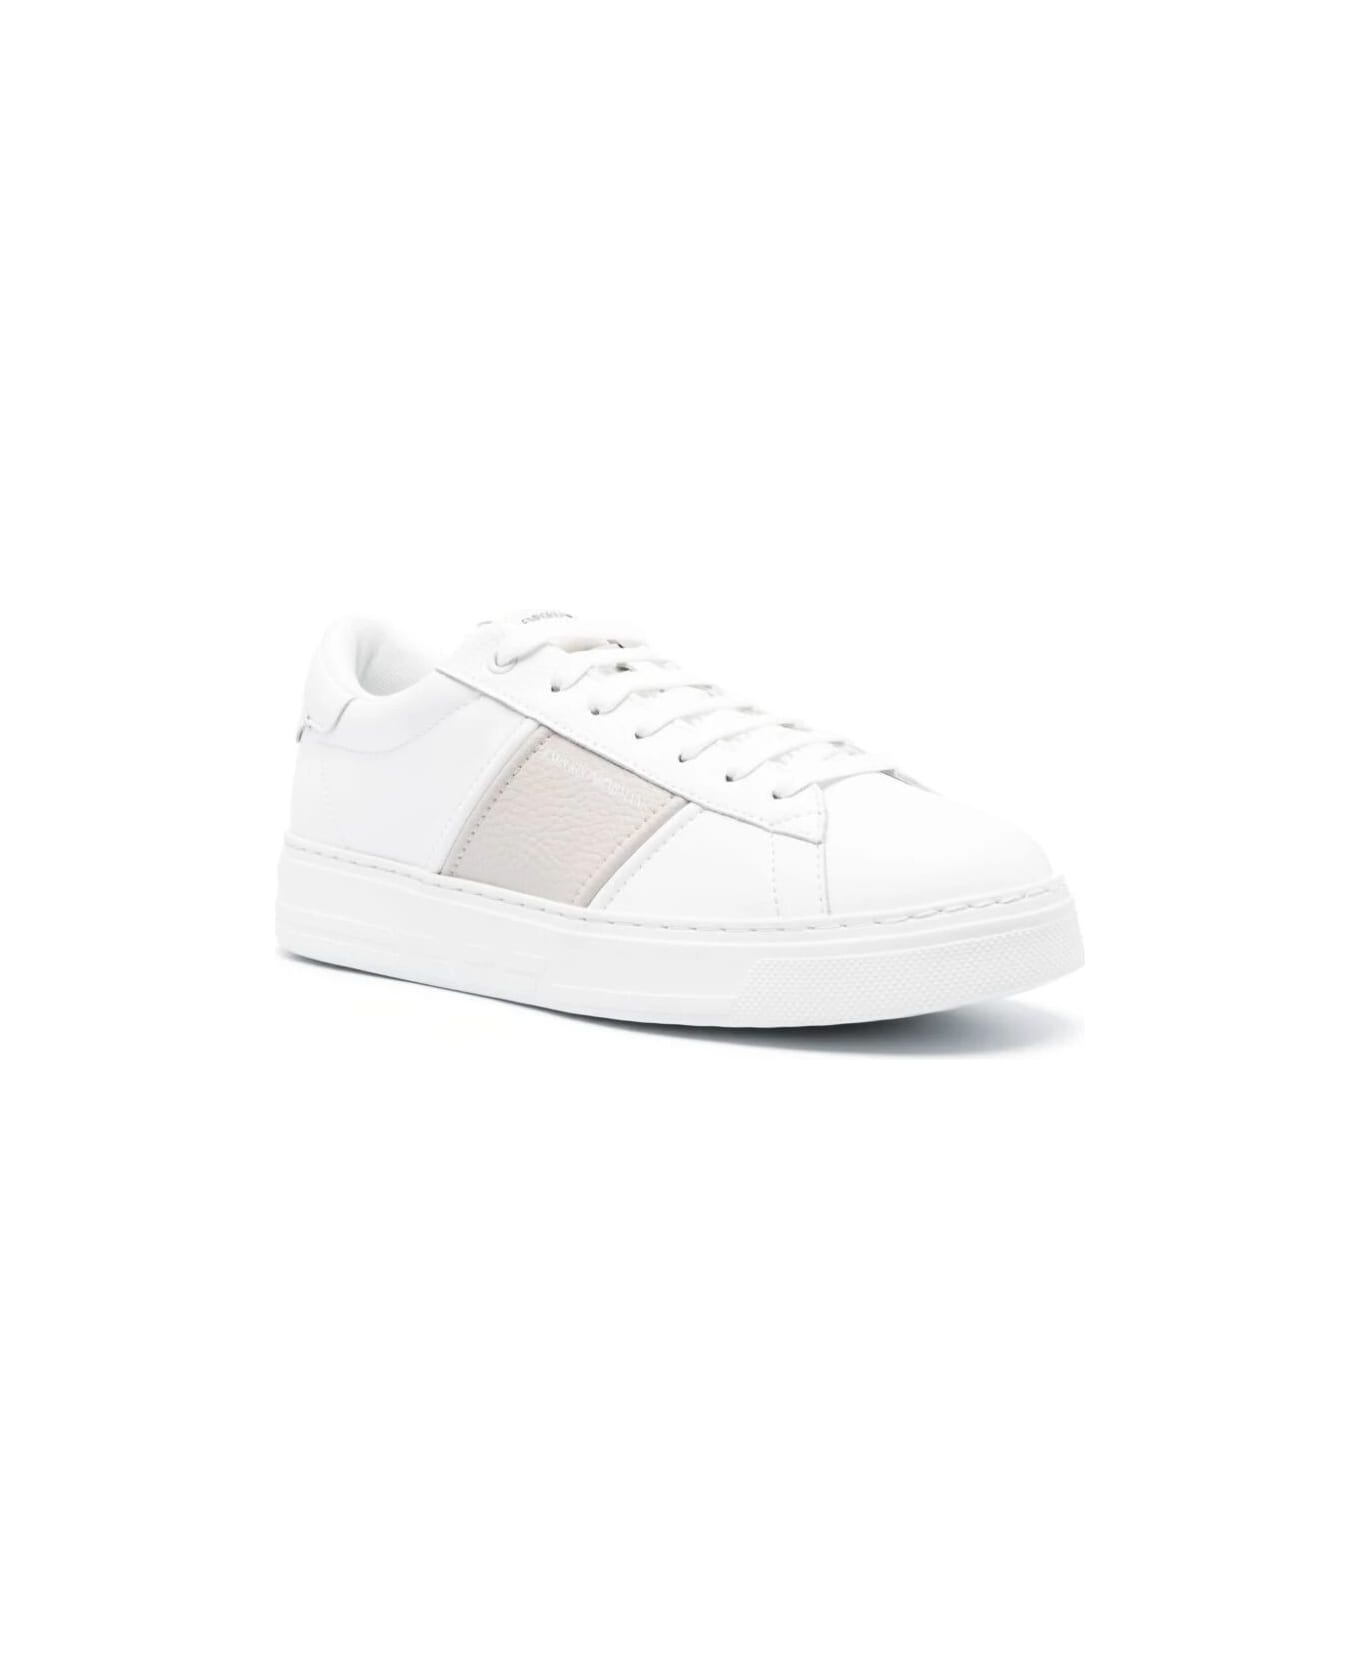 Emporio Armani Sneaker Mesh - Opt White Silver スニーカー